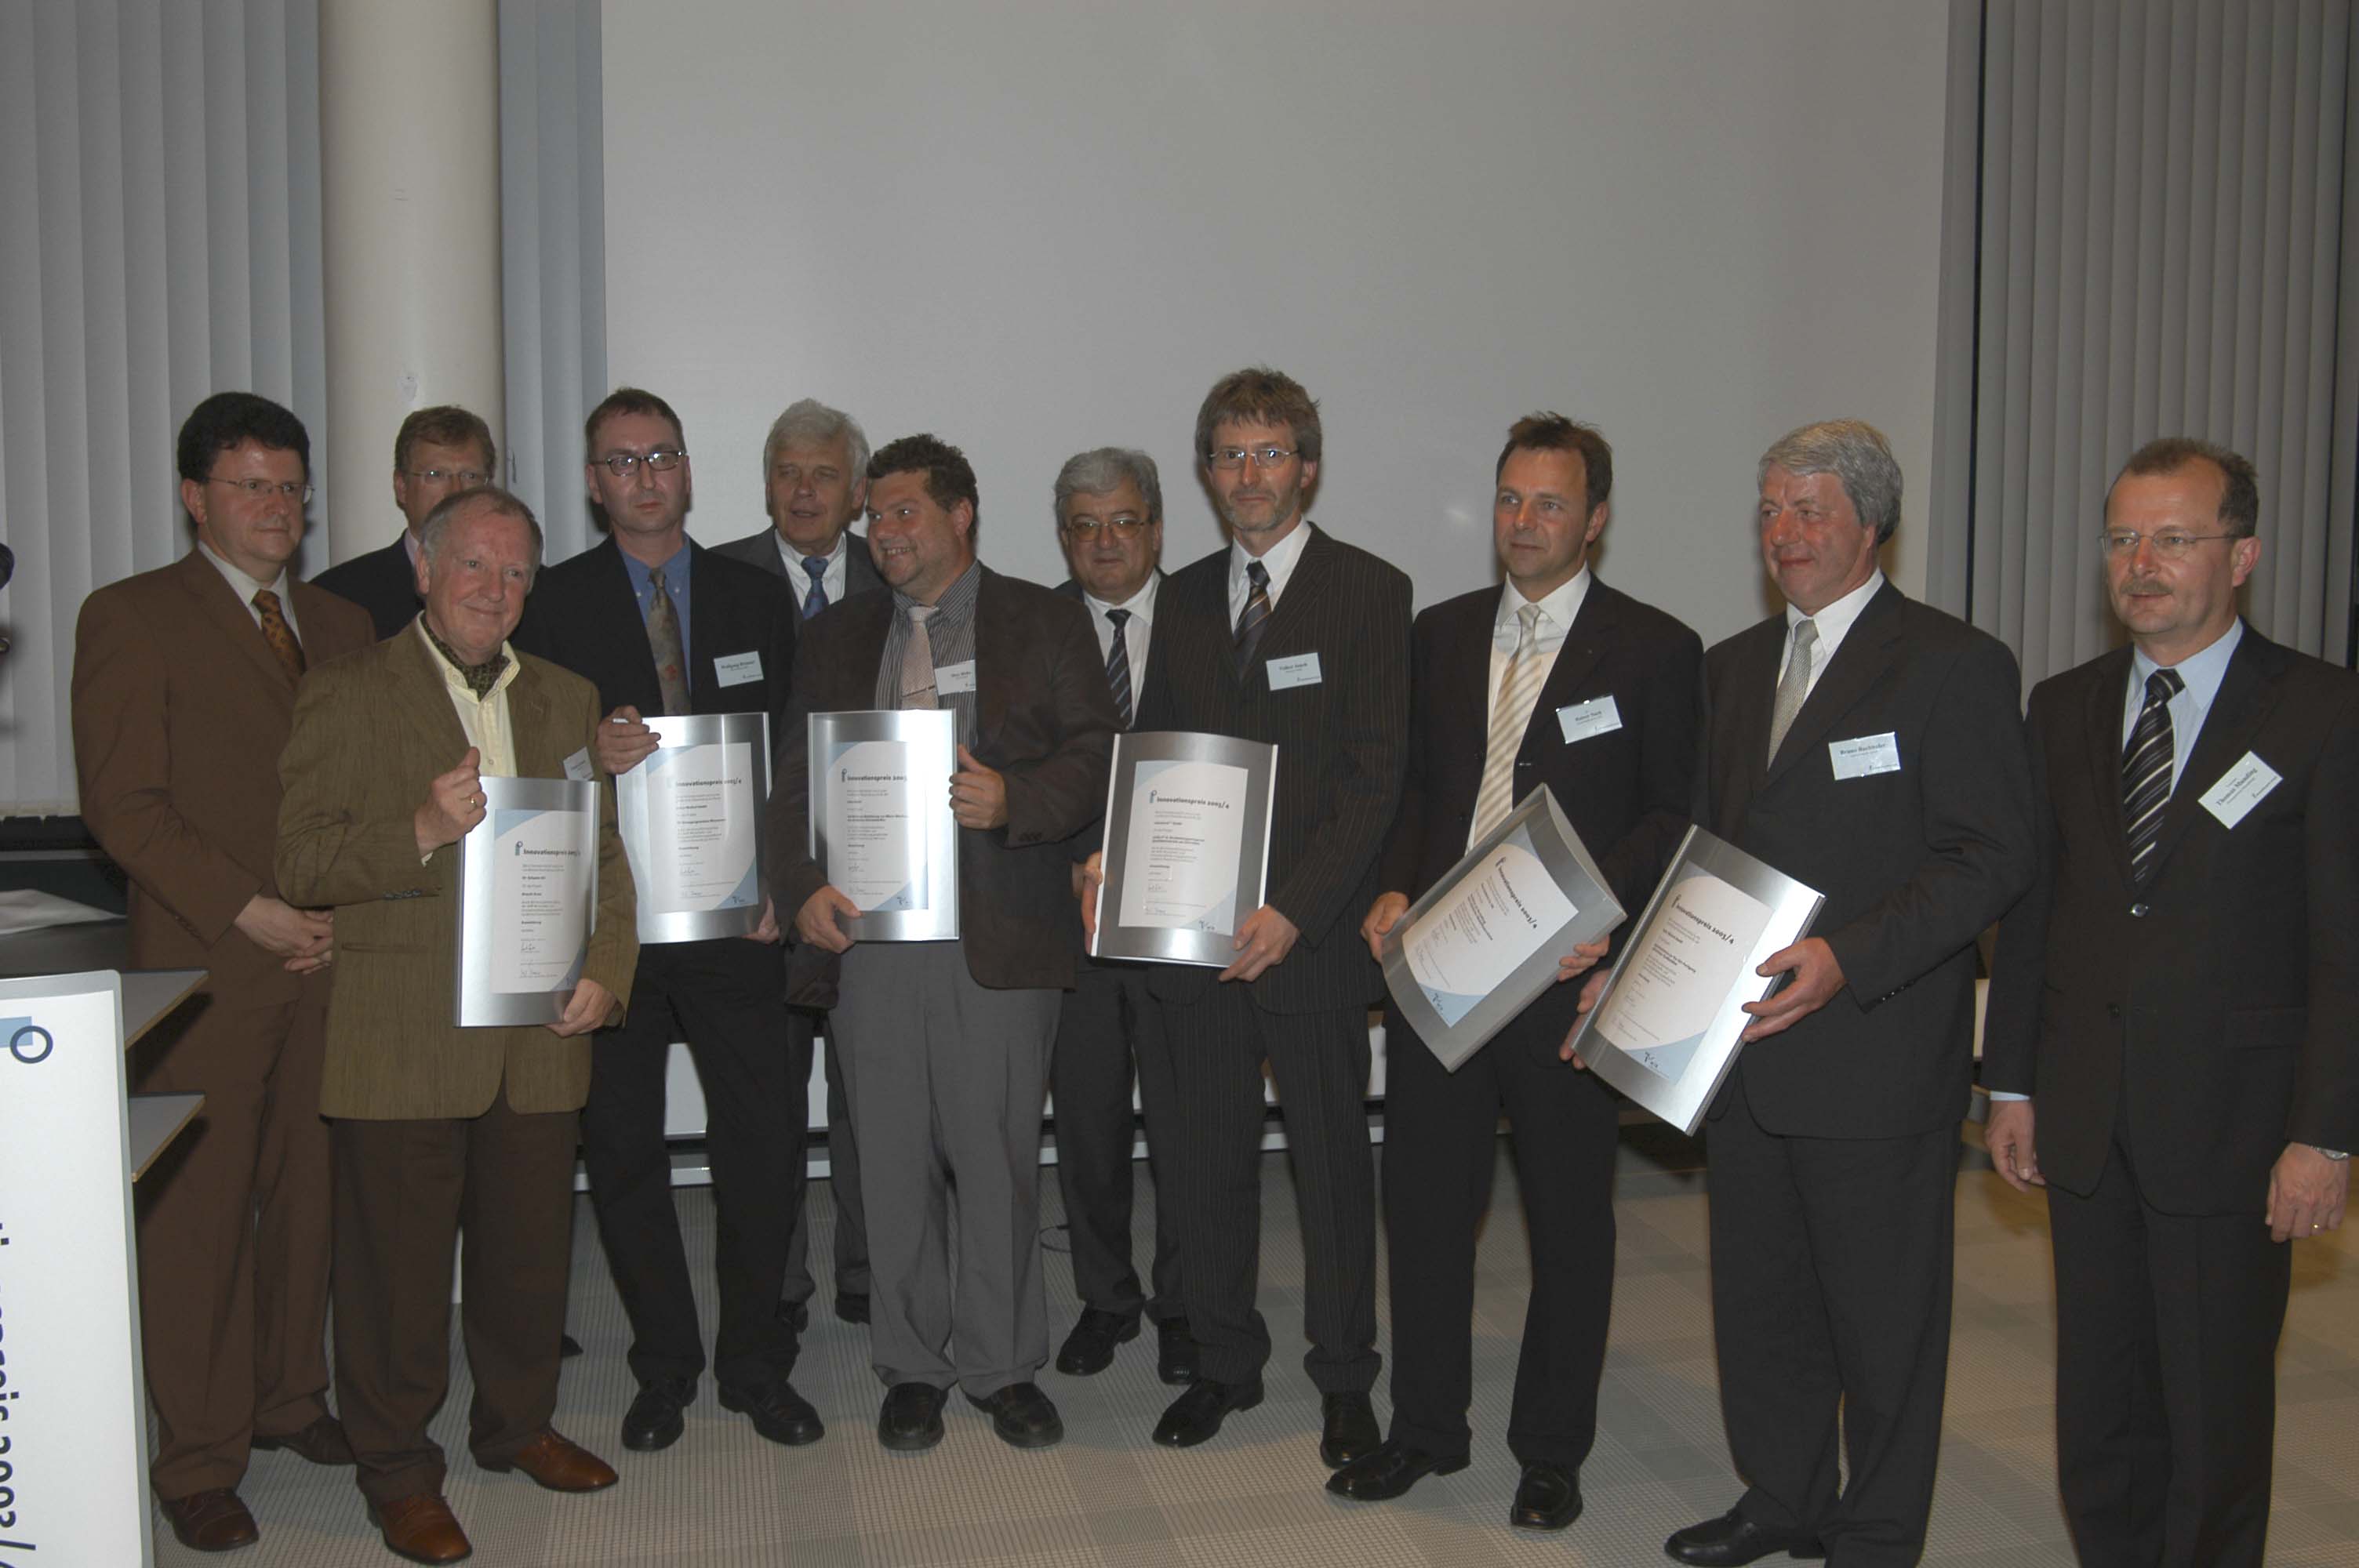 Innovationspreis 2003/2004